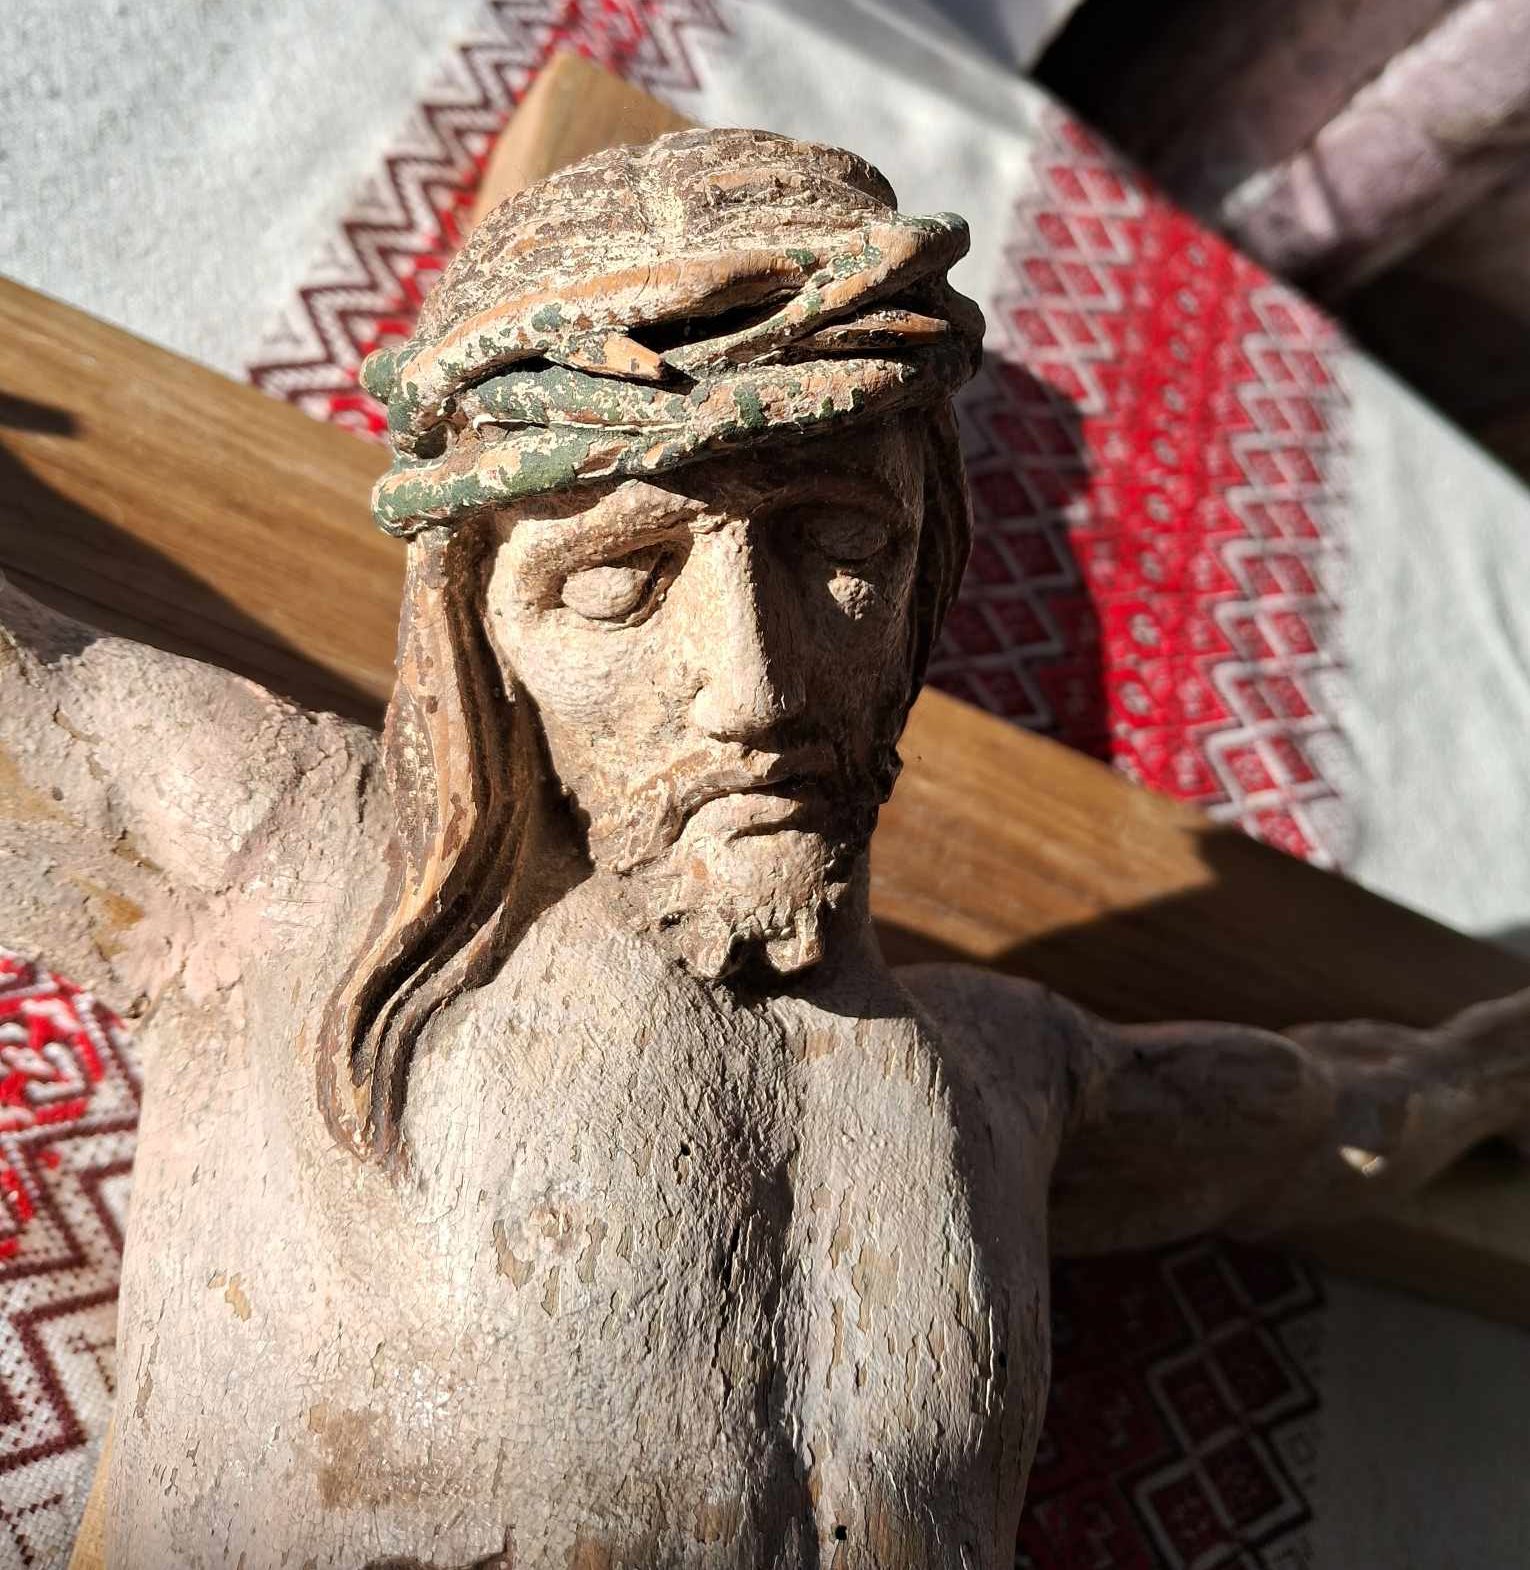 Дерев'яна скульптура розп'яття Христа, знайдена у дзвіниці храму на Бібреччині.